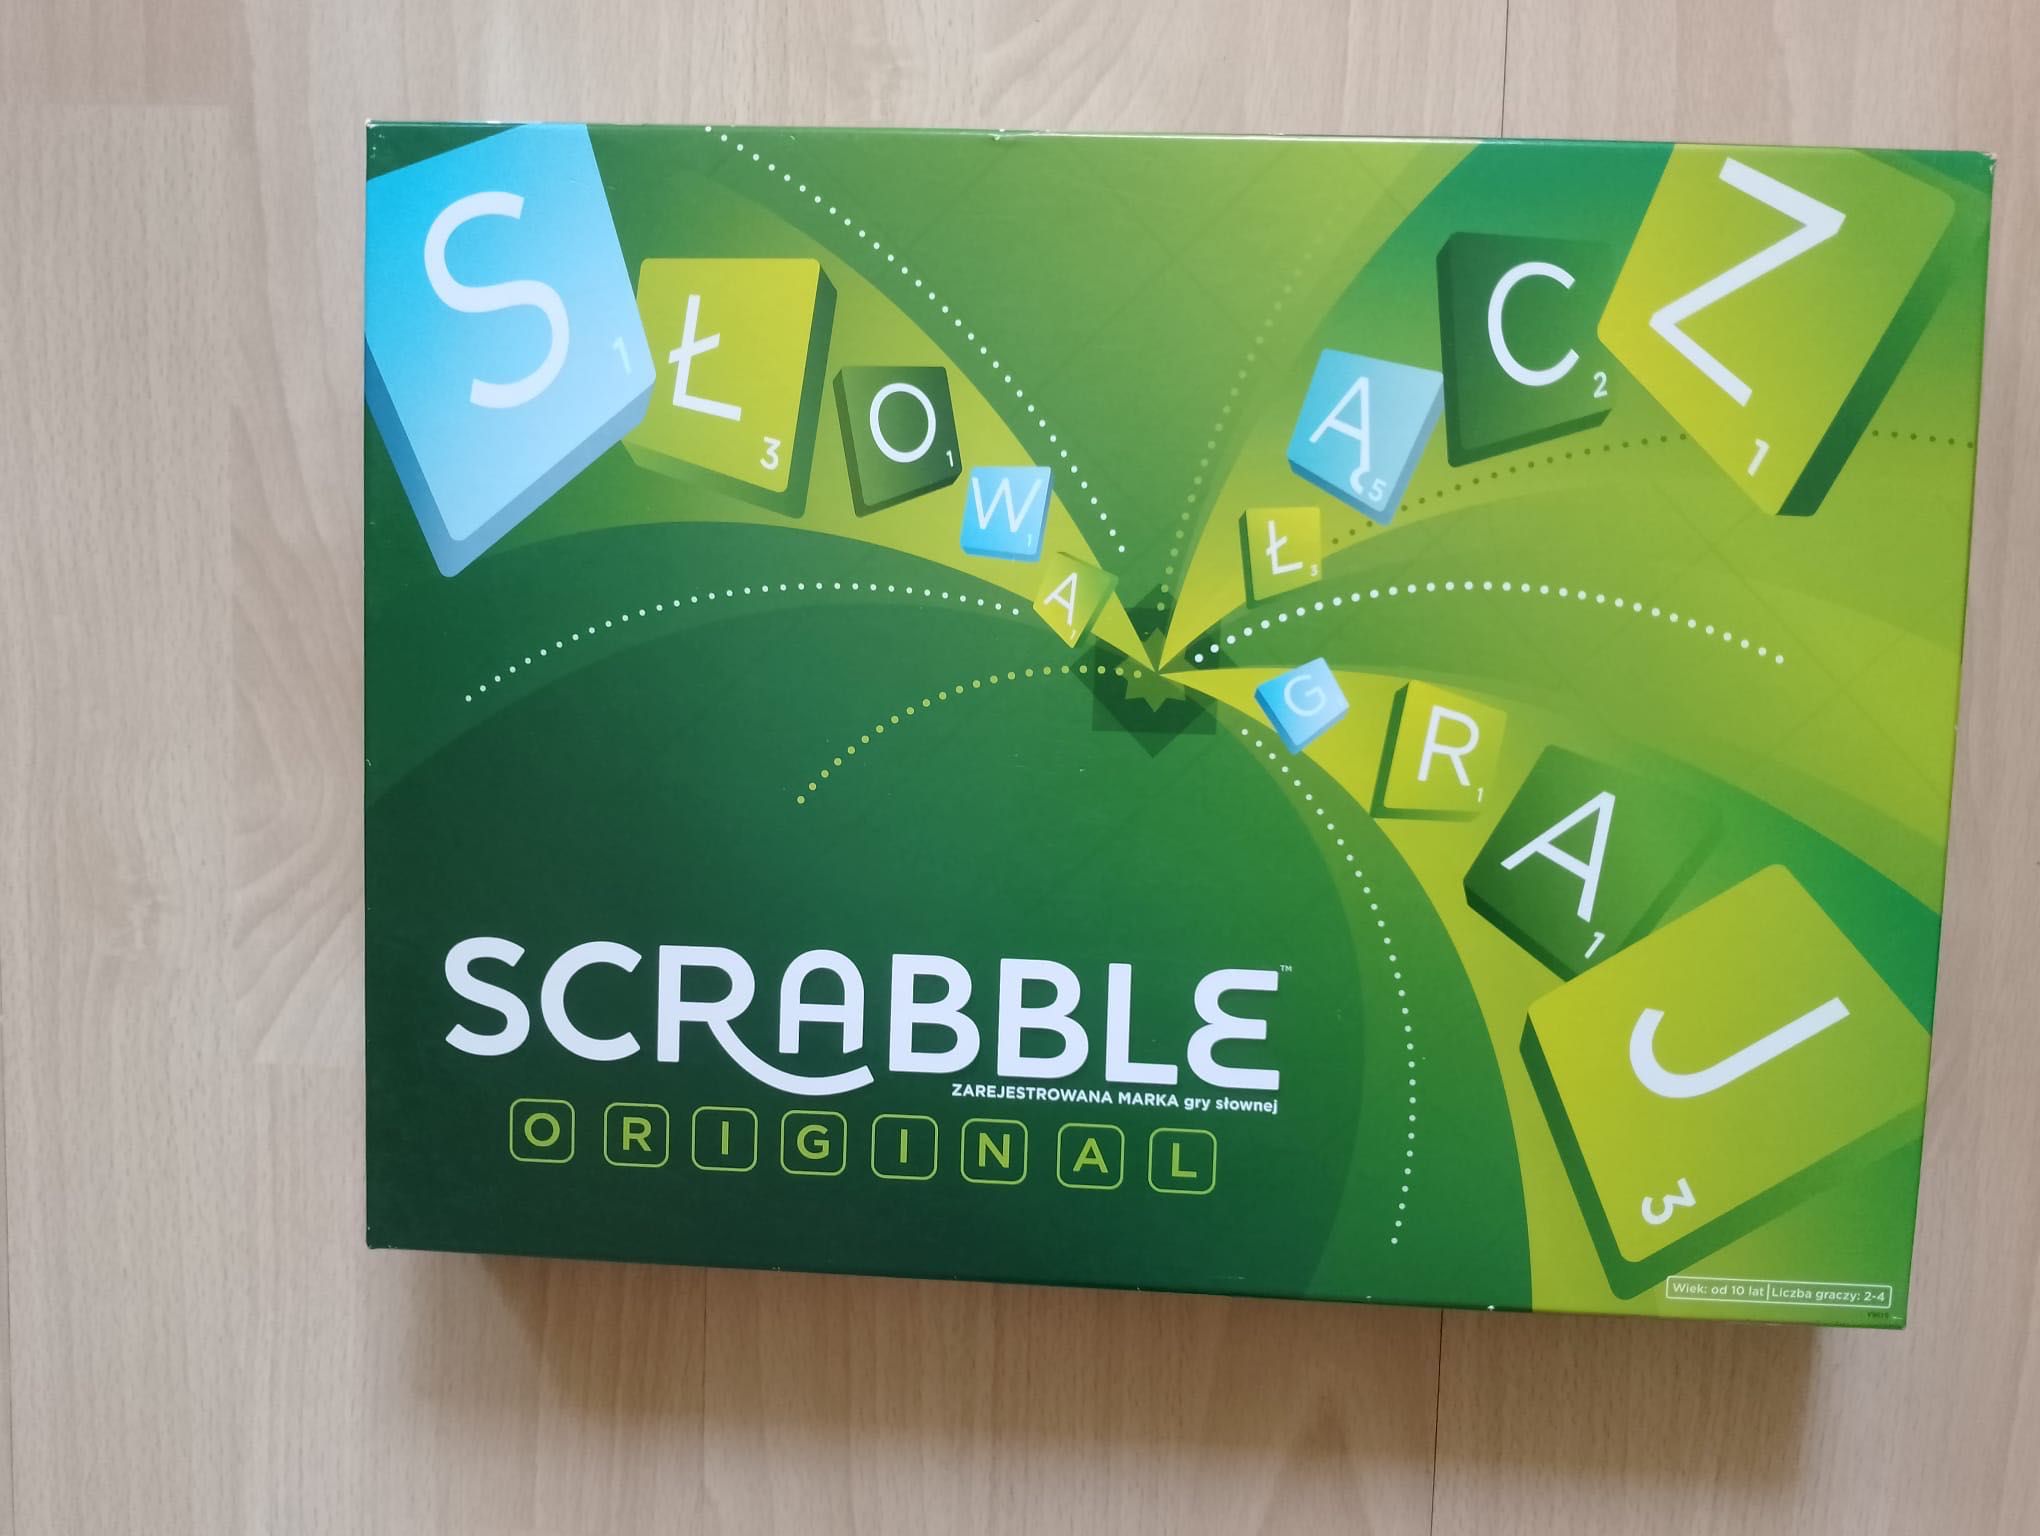 Scrabble praktycznie jak nowa